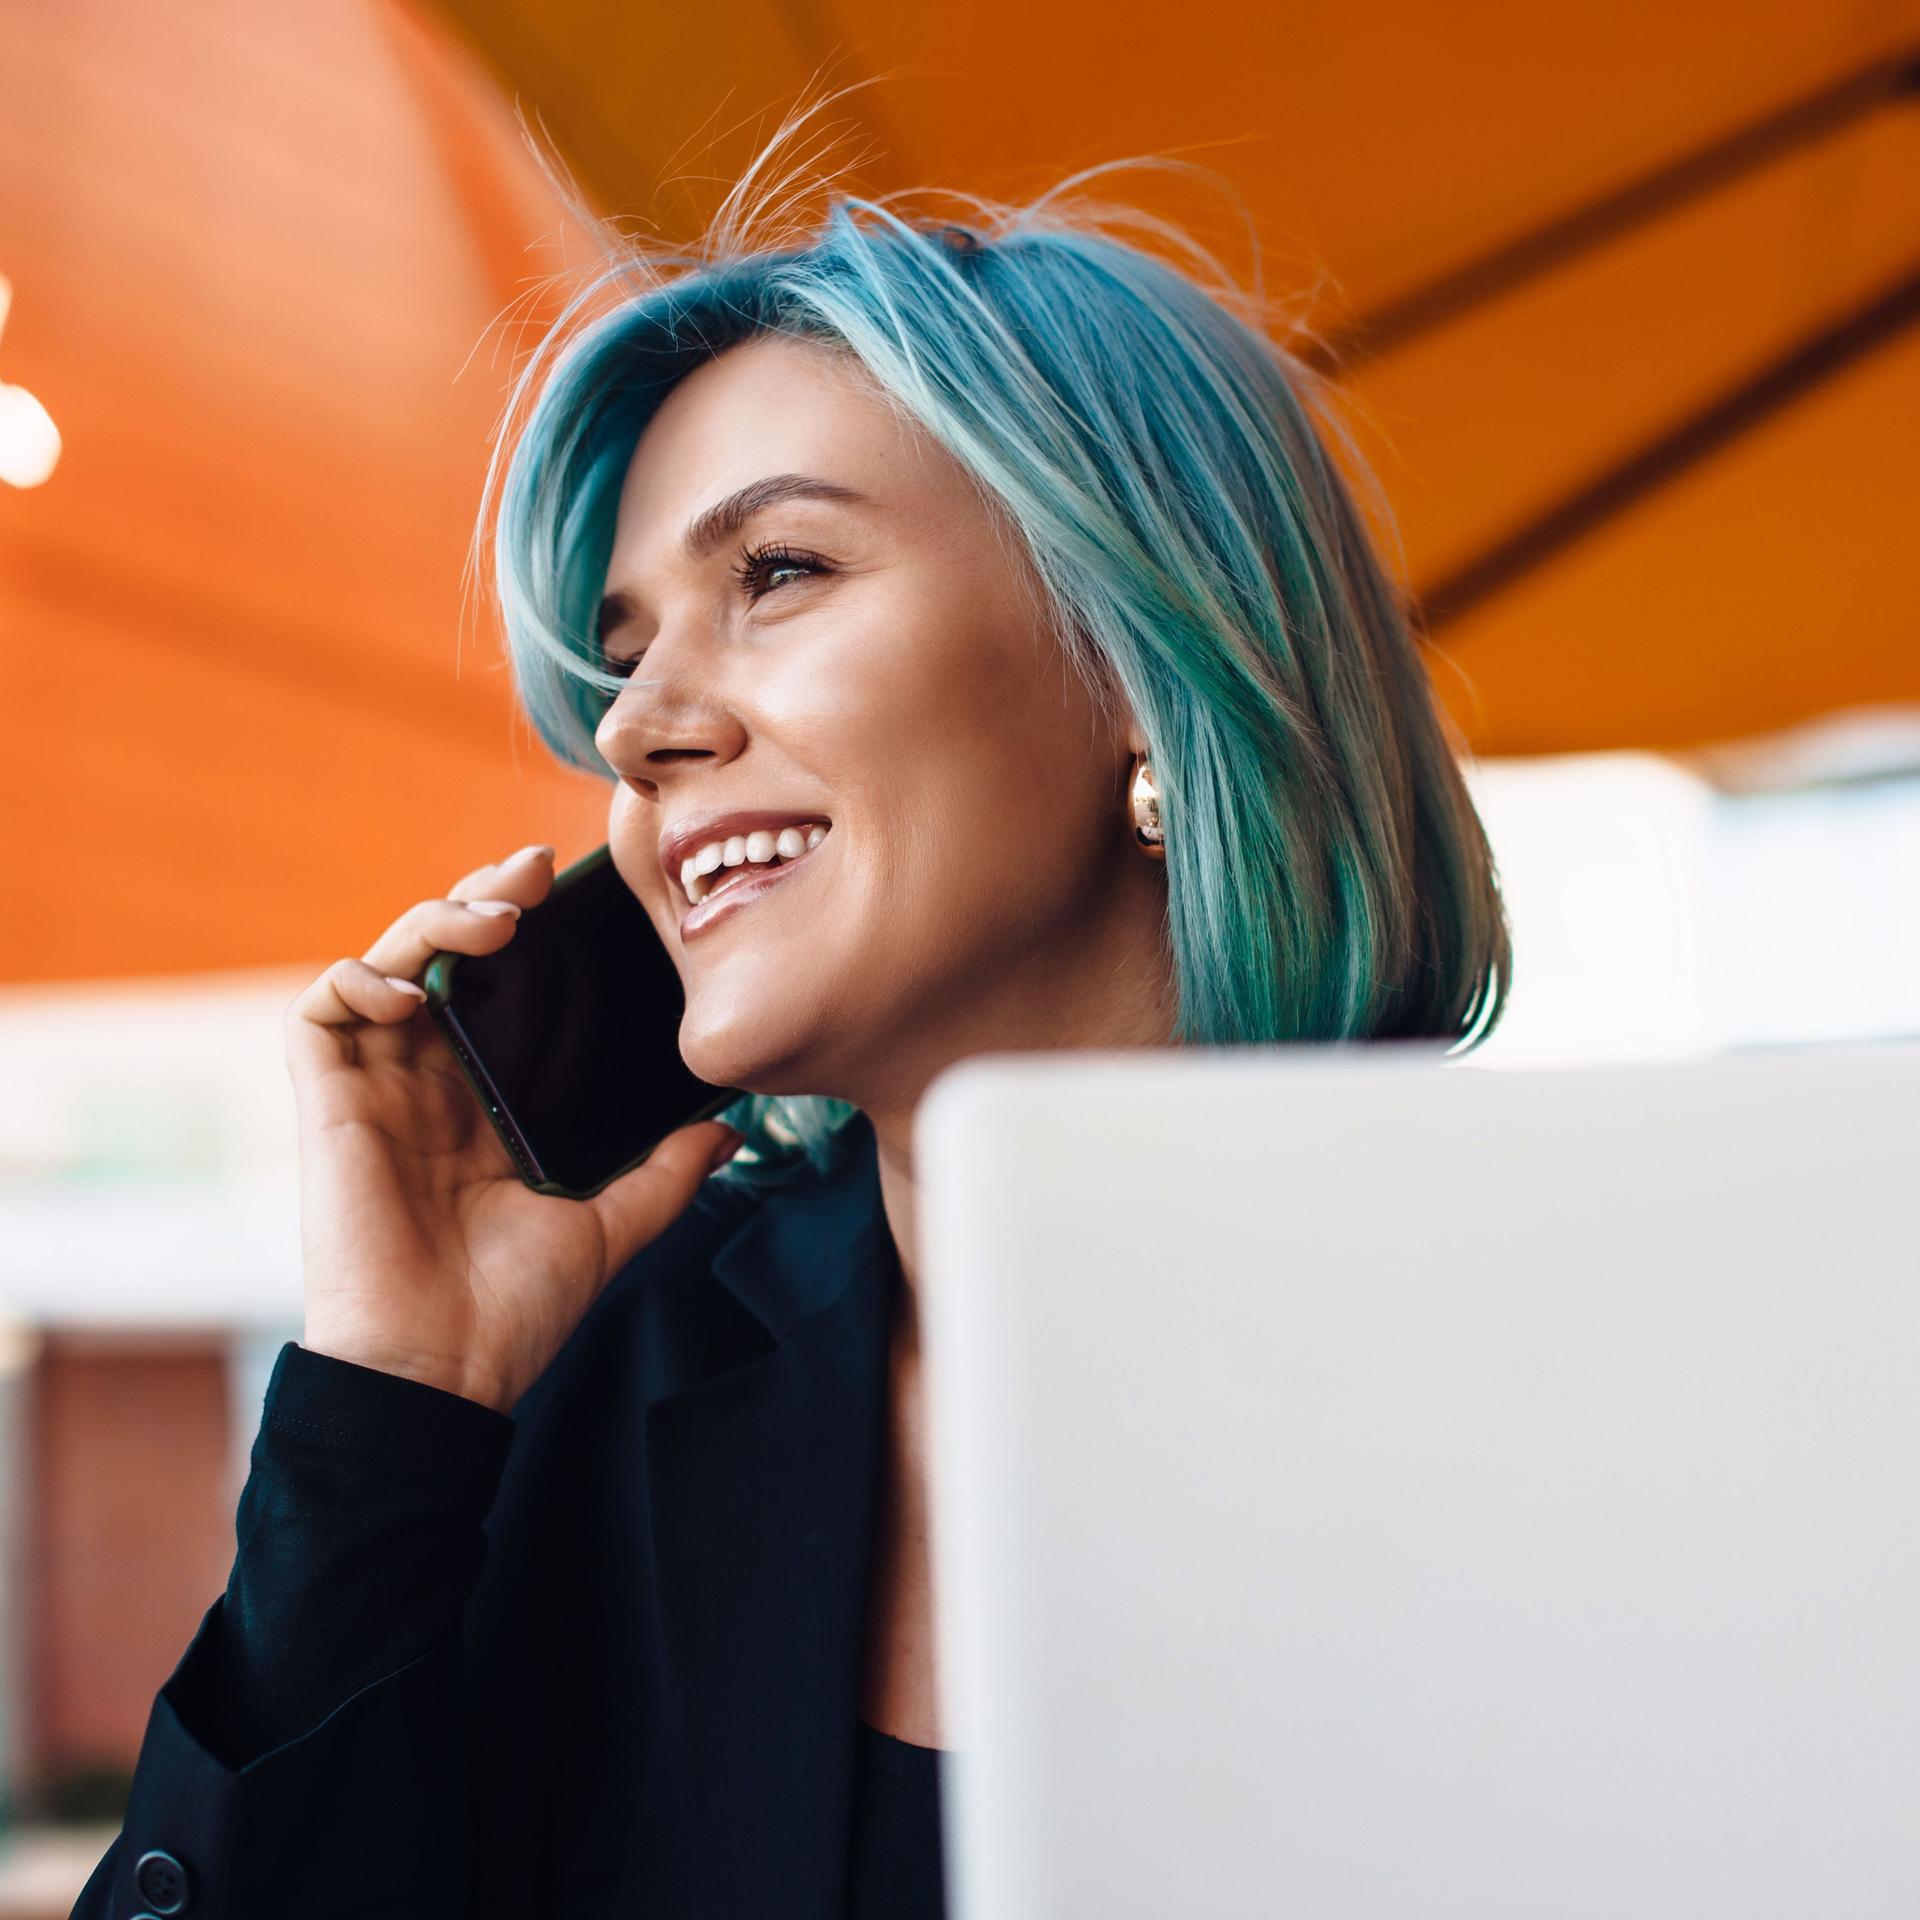 Junge lächelnde Frau mit blauen Haaren am Telefonieren mit Laptop vor sich.